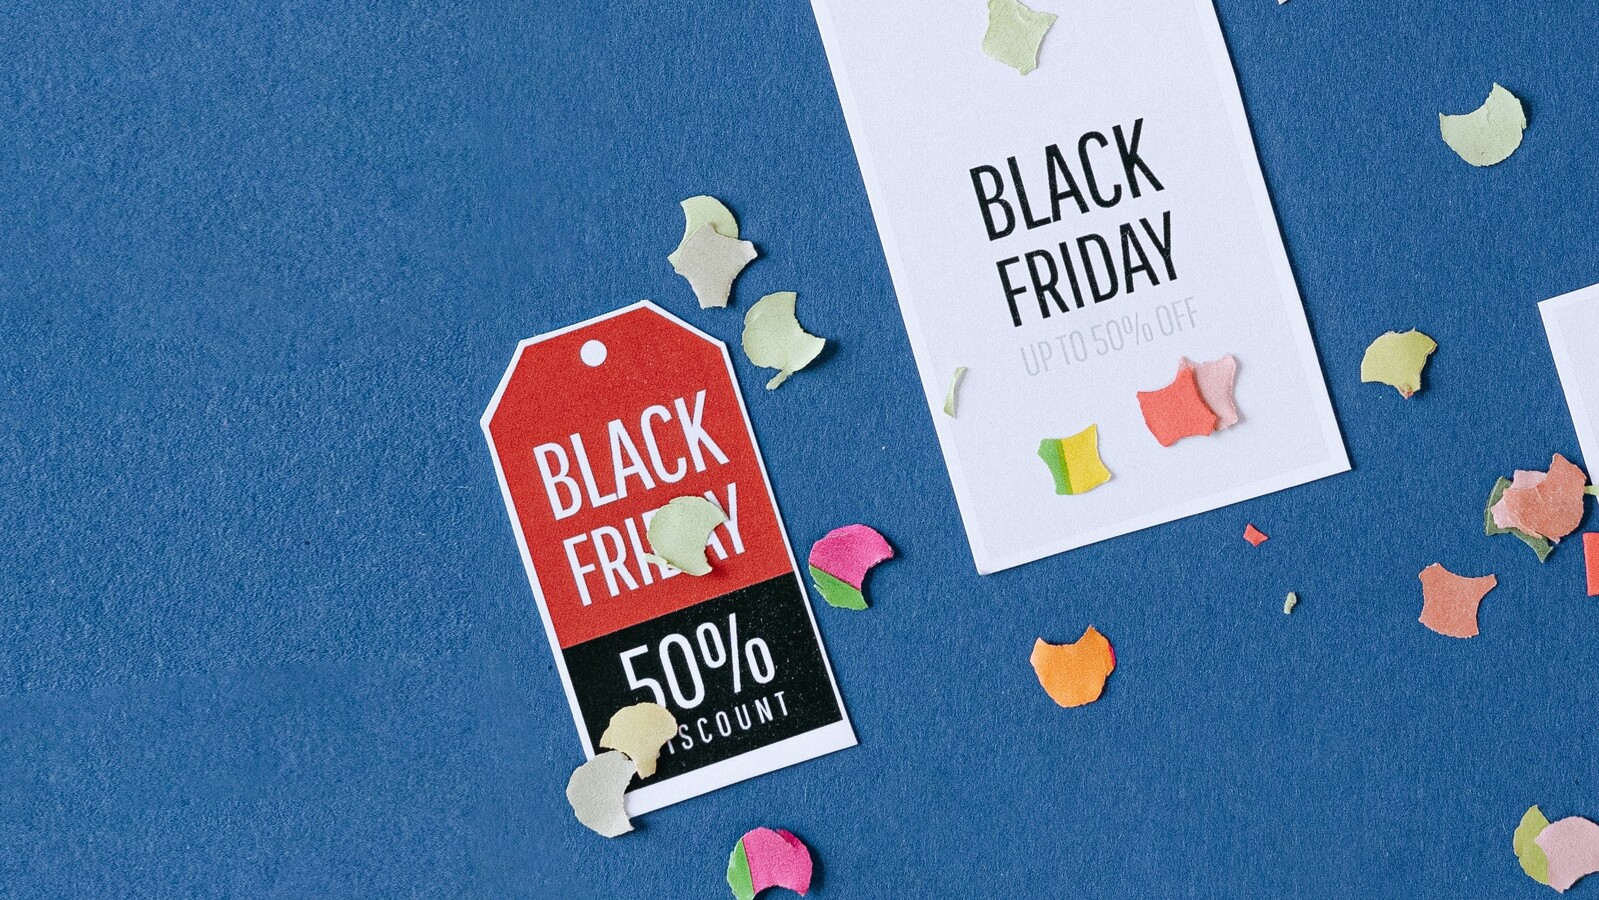 Surprise (non) : entre 40 et 90% des promotions Black Friday ne sont pas de vraies promotions